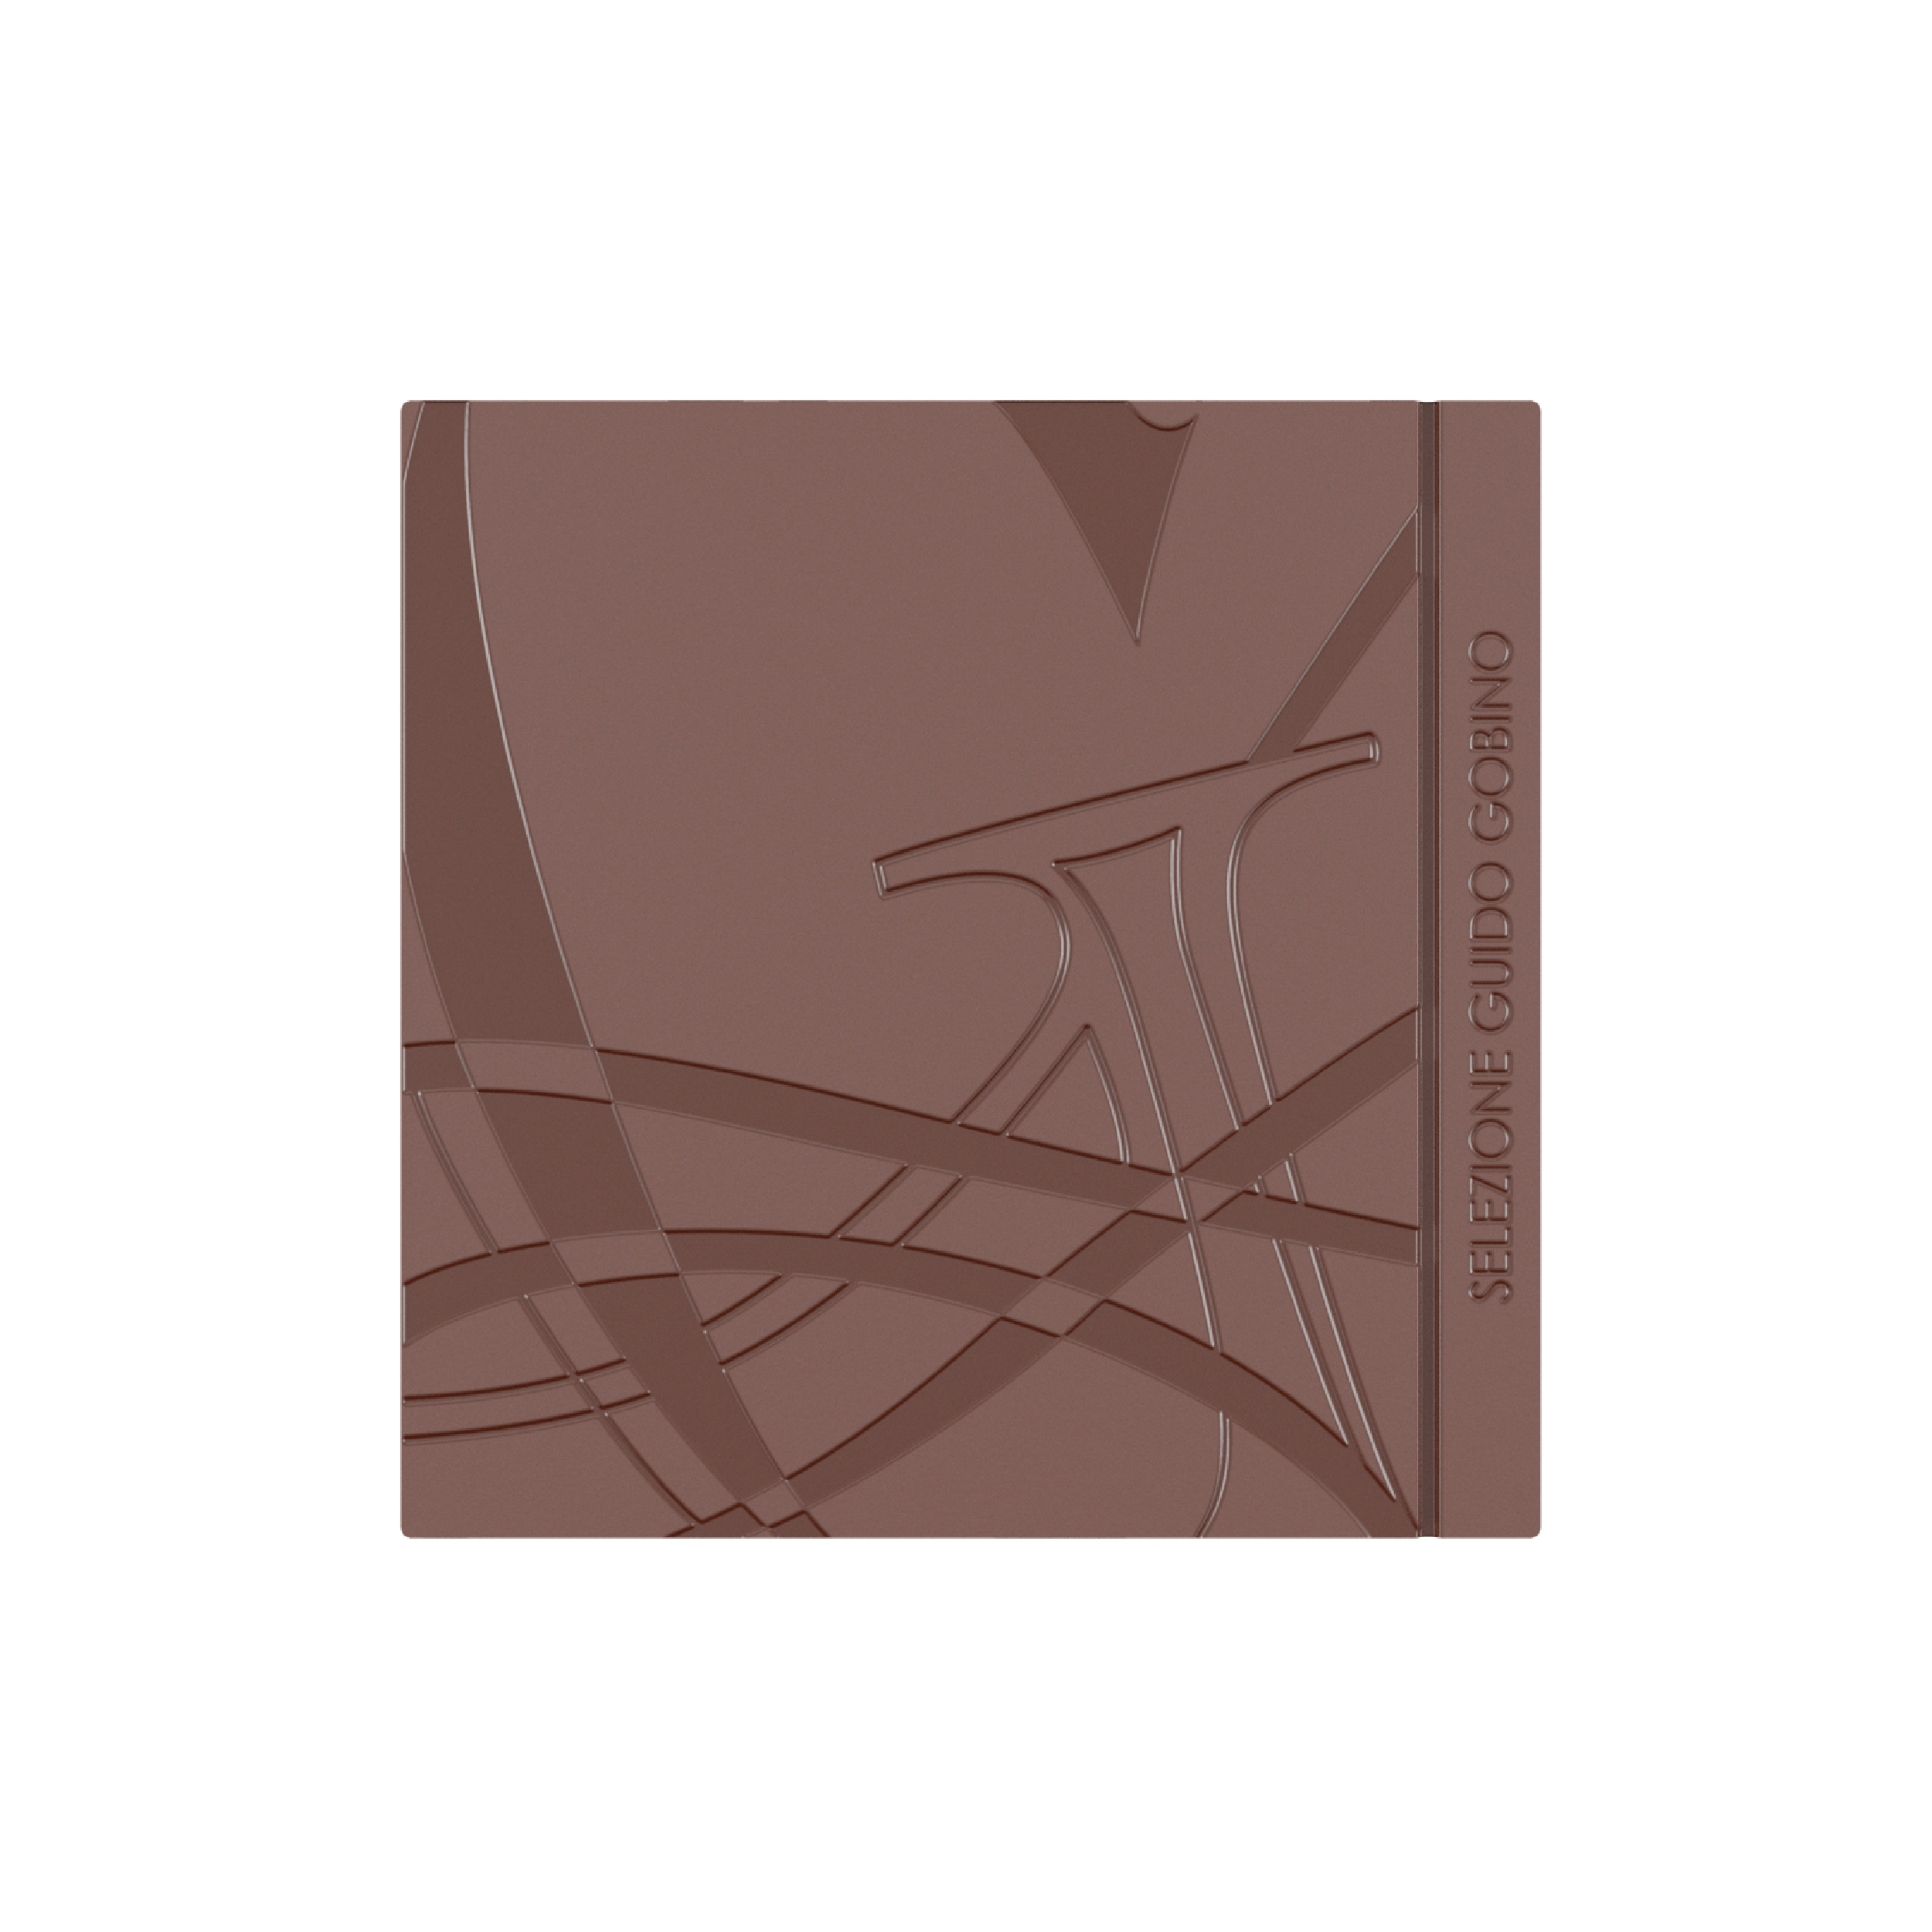 Louis Vuitton - Hazelnut Vanilla Chocolate Spread